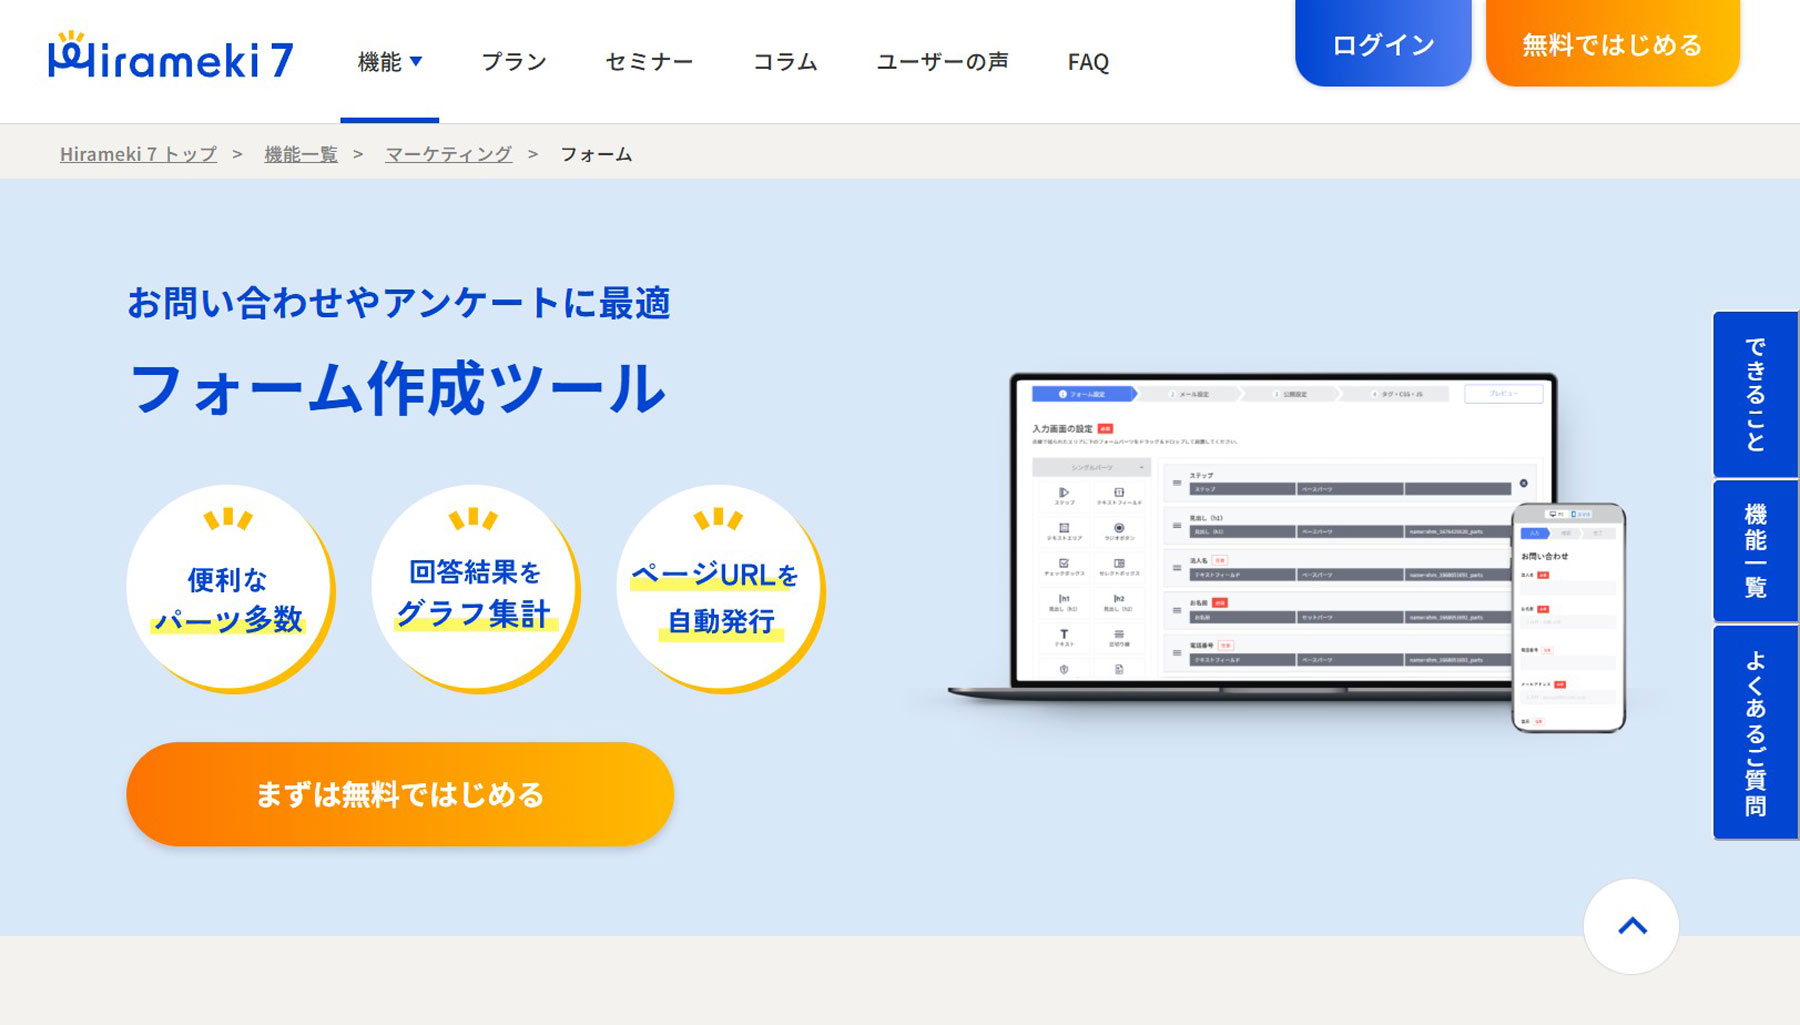 Hirameki 7公式Webサイト